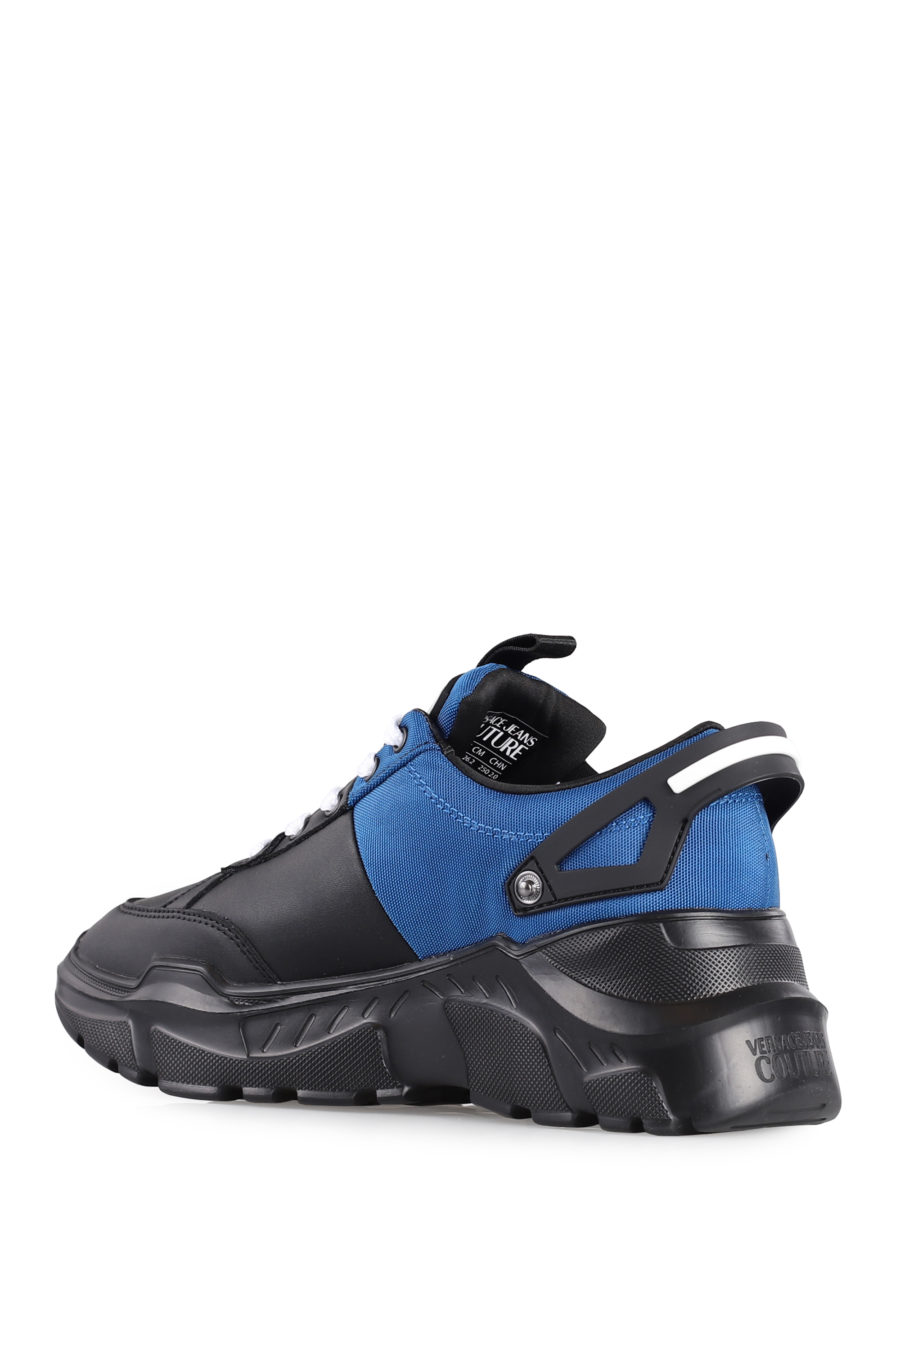 Zapatillas "Speedtrack" de color negro y azul - IMG 1024